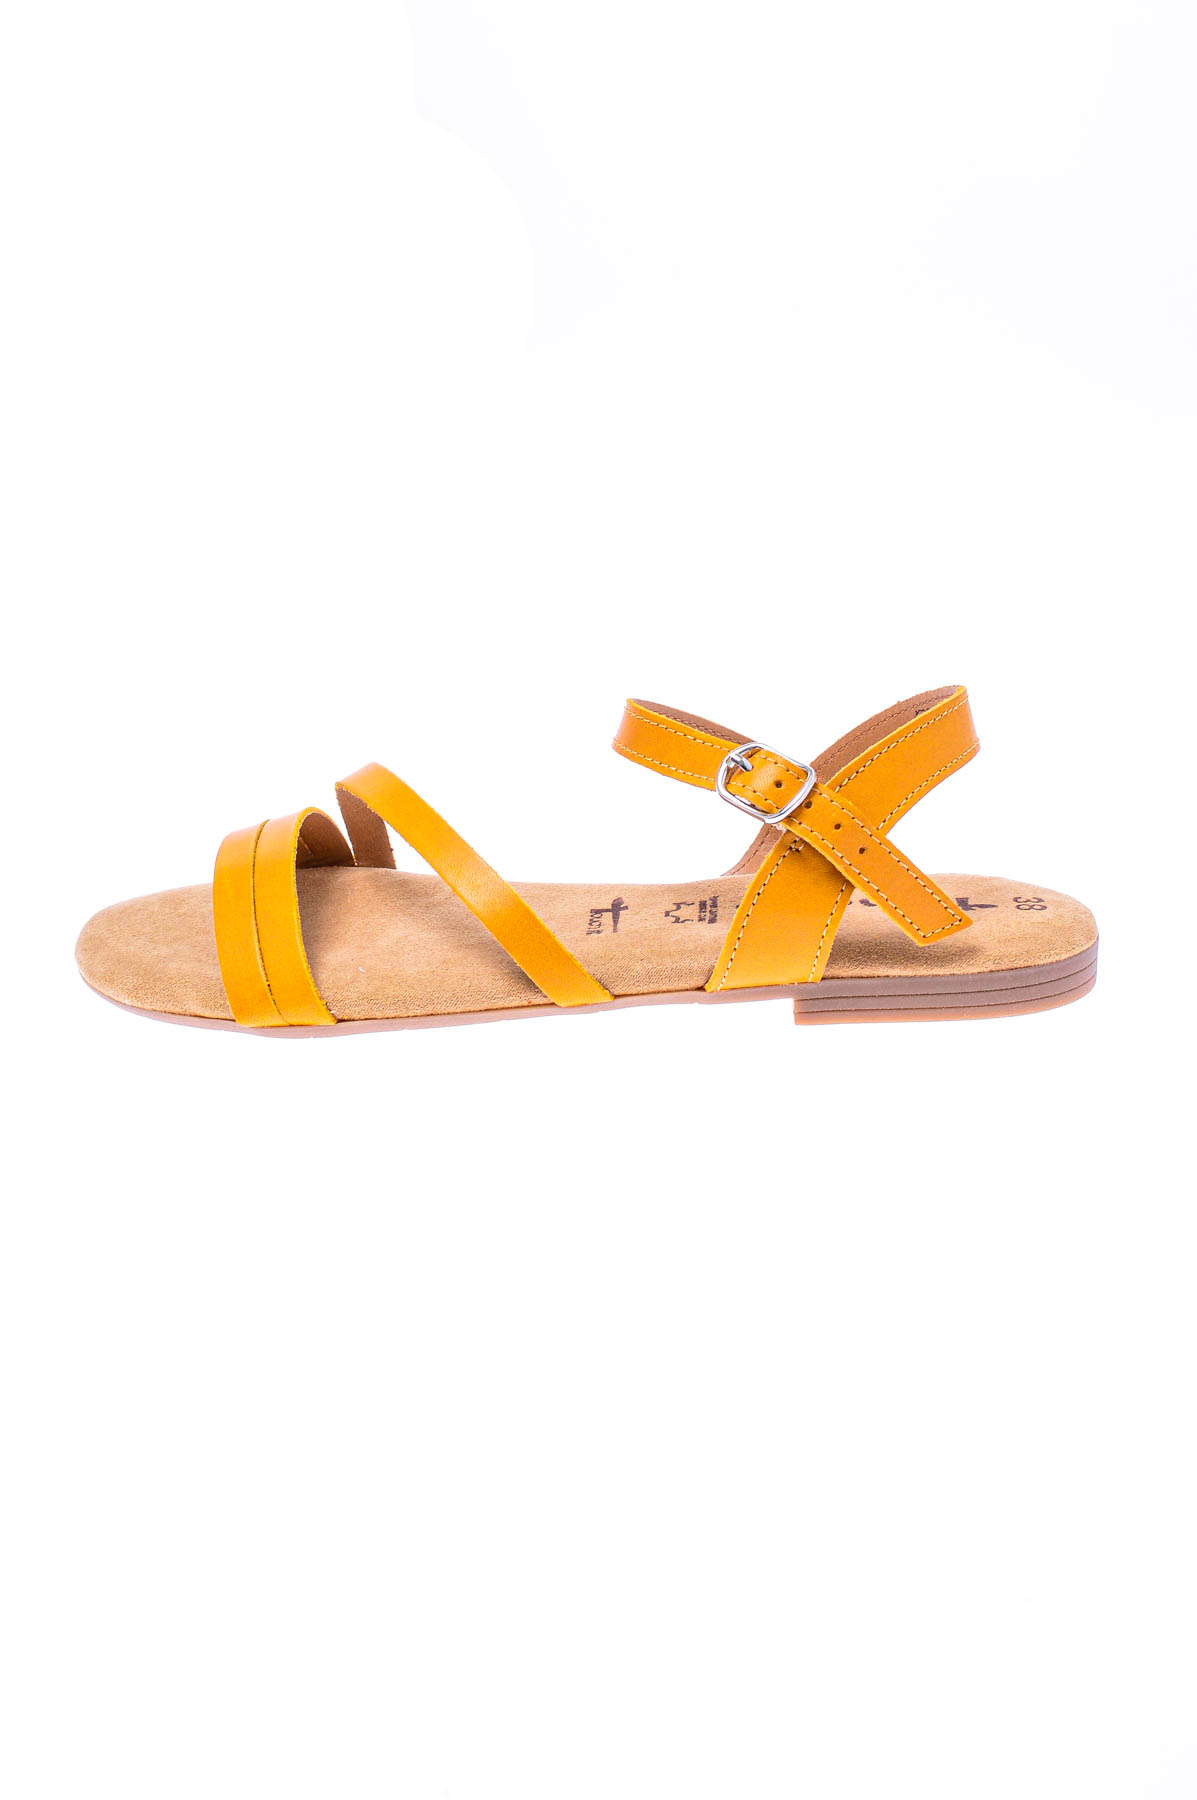 Women's sandals - Tamaris - 0